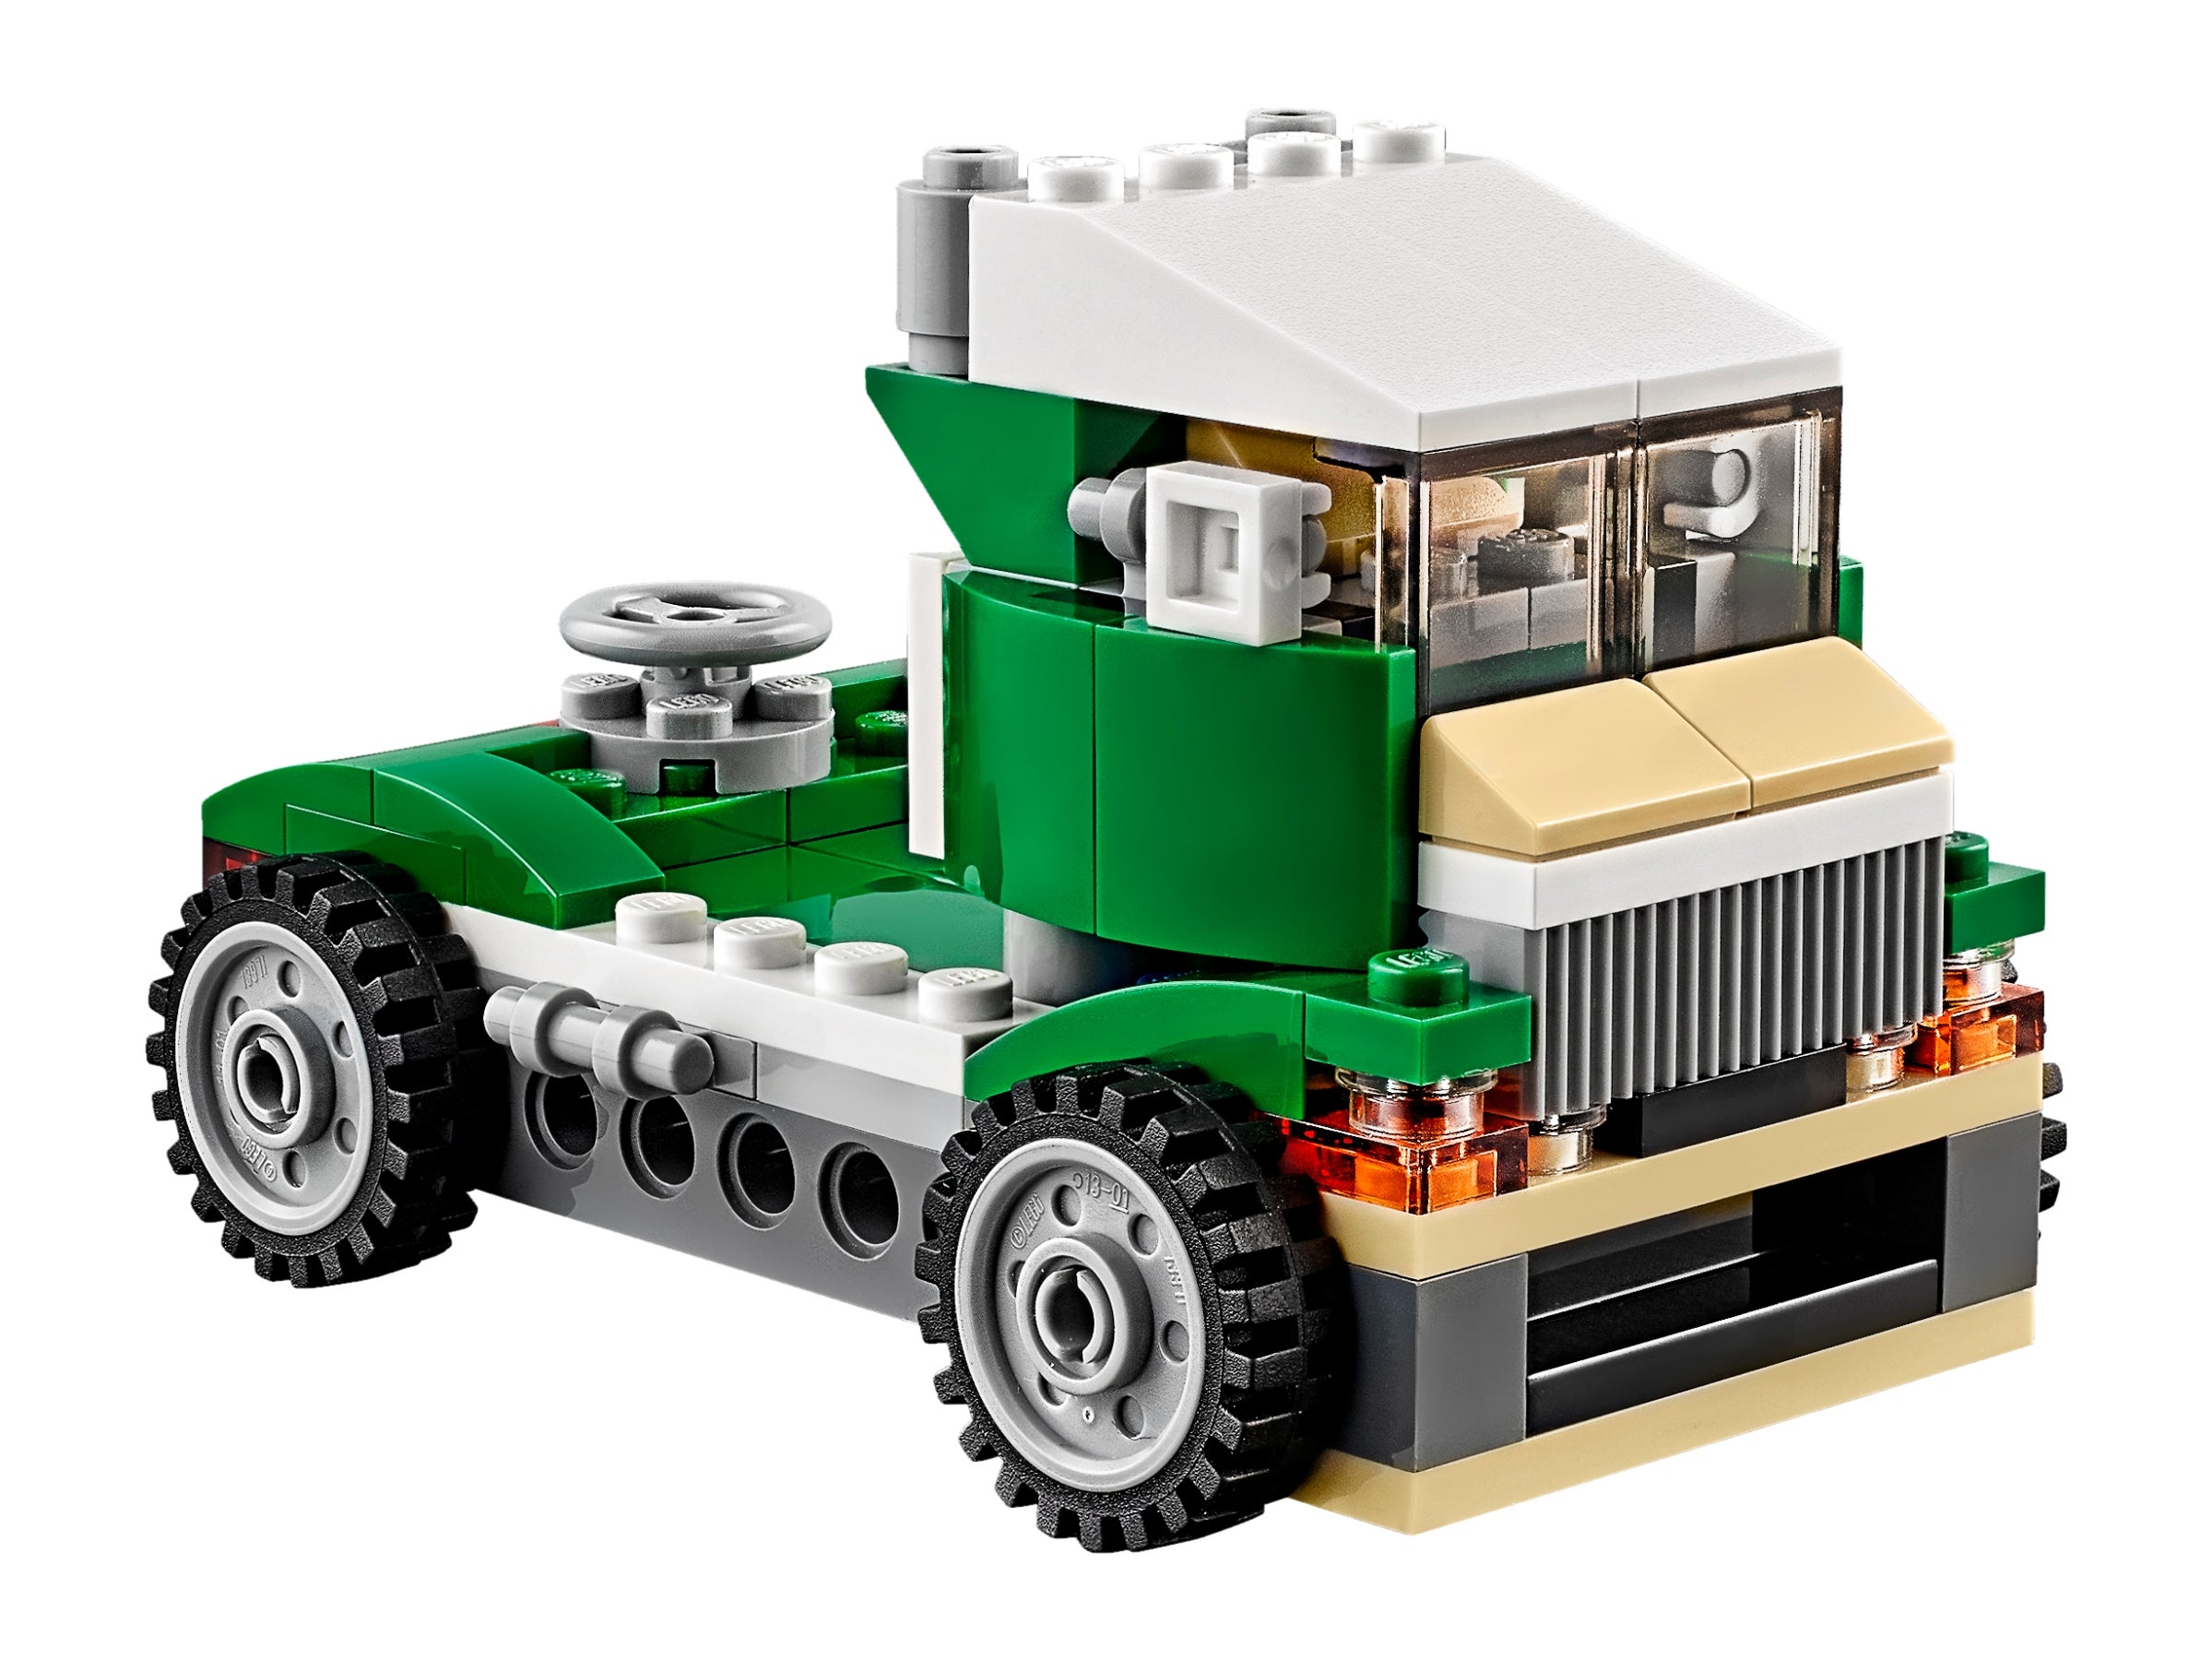 Lego 31056 Green Cruiser Set 